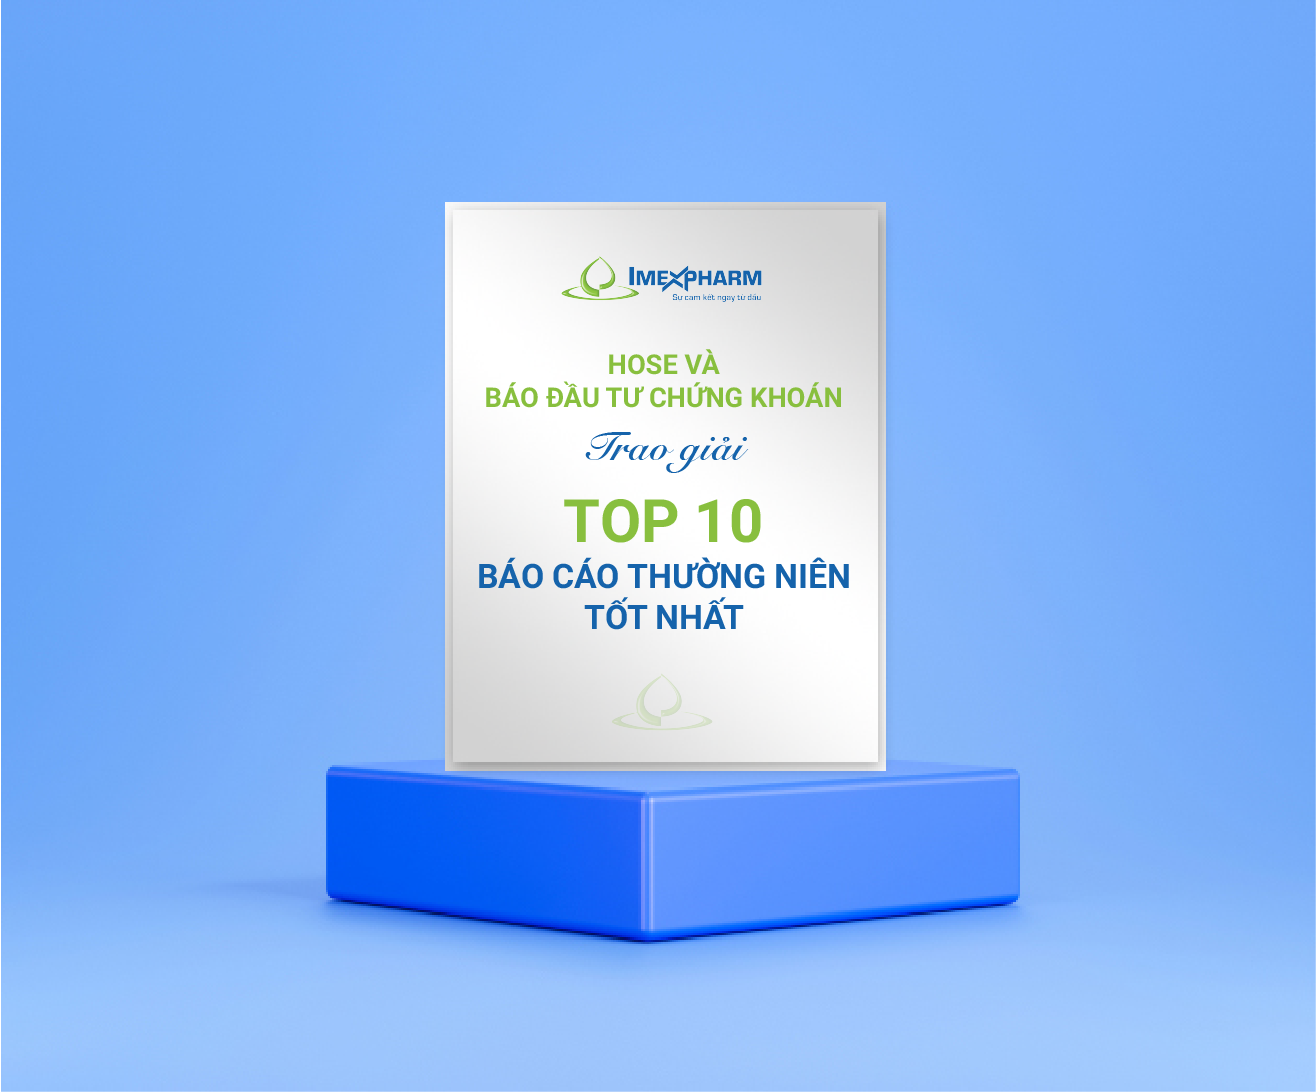 HOSE và Báo Đầu tư chứng khoán trao giải Top 10 Báo cáo thường niên tốt nhất .